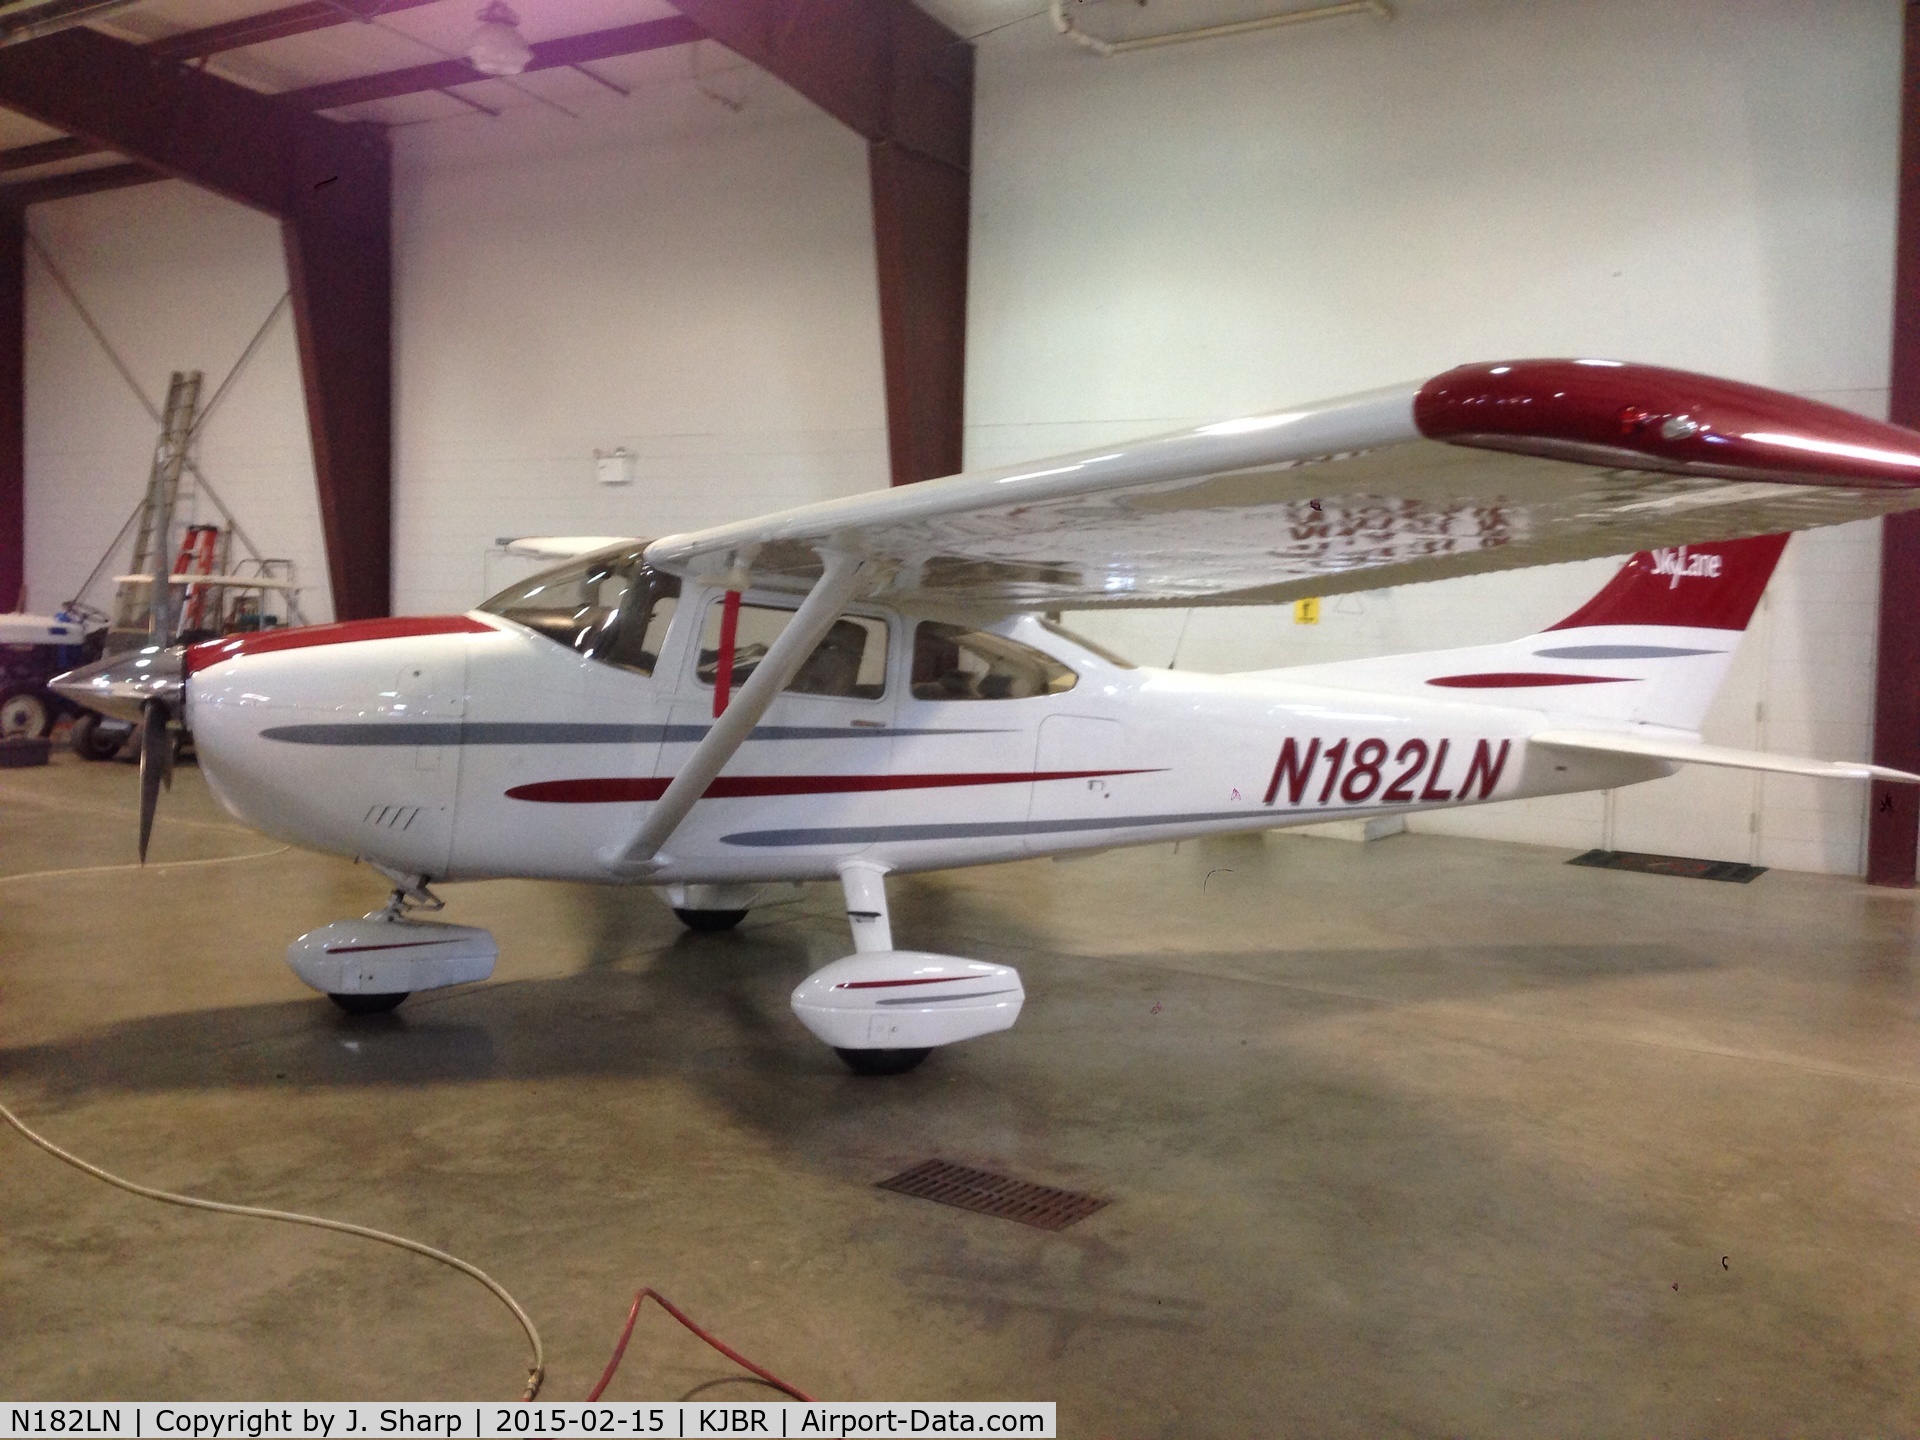 N182LN, 1976 Cessna 182P Skylane C/N 18265048, N182LN in the Sharp Aviation Hangar at KJBR